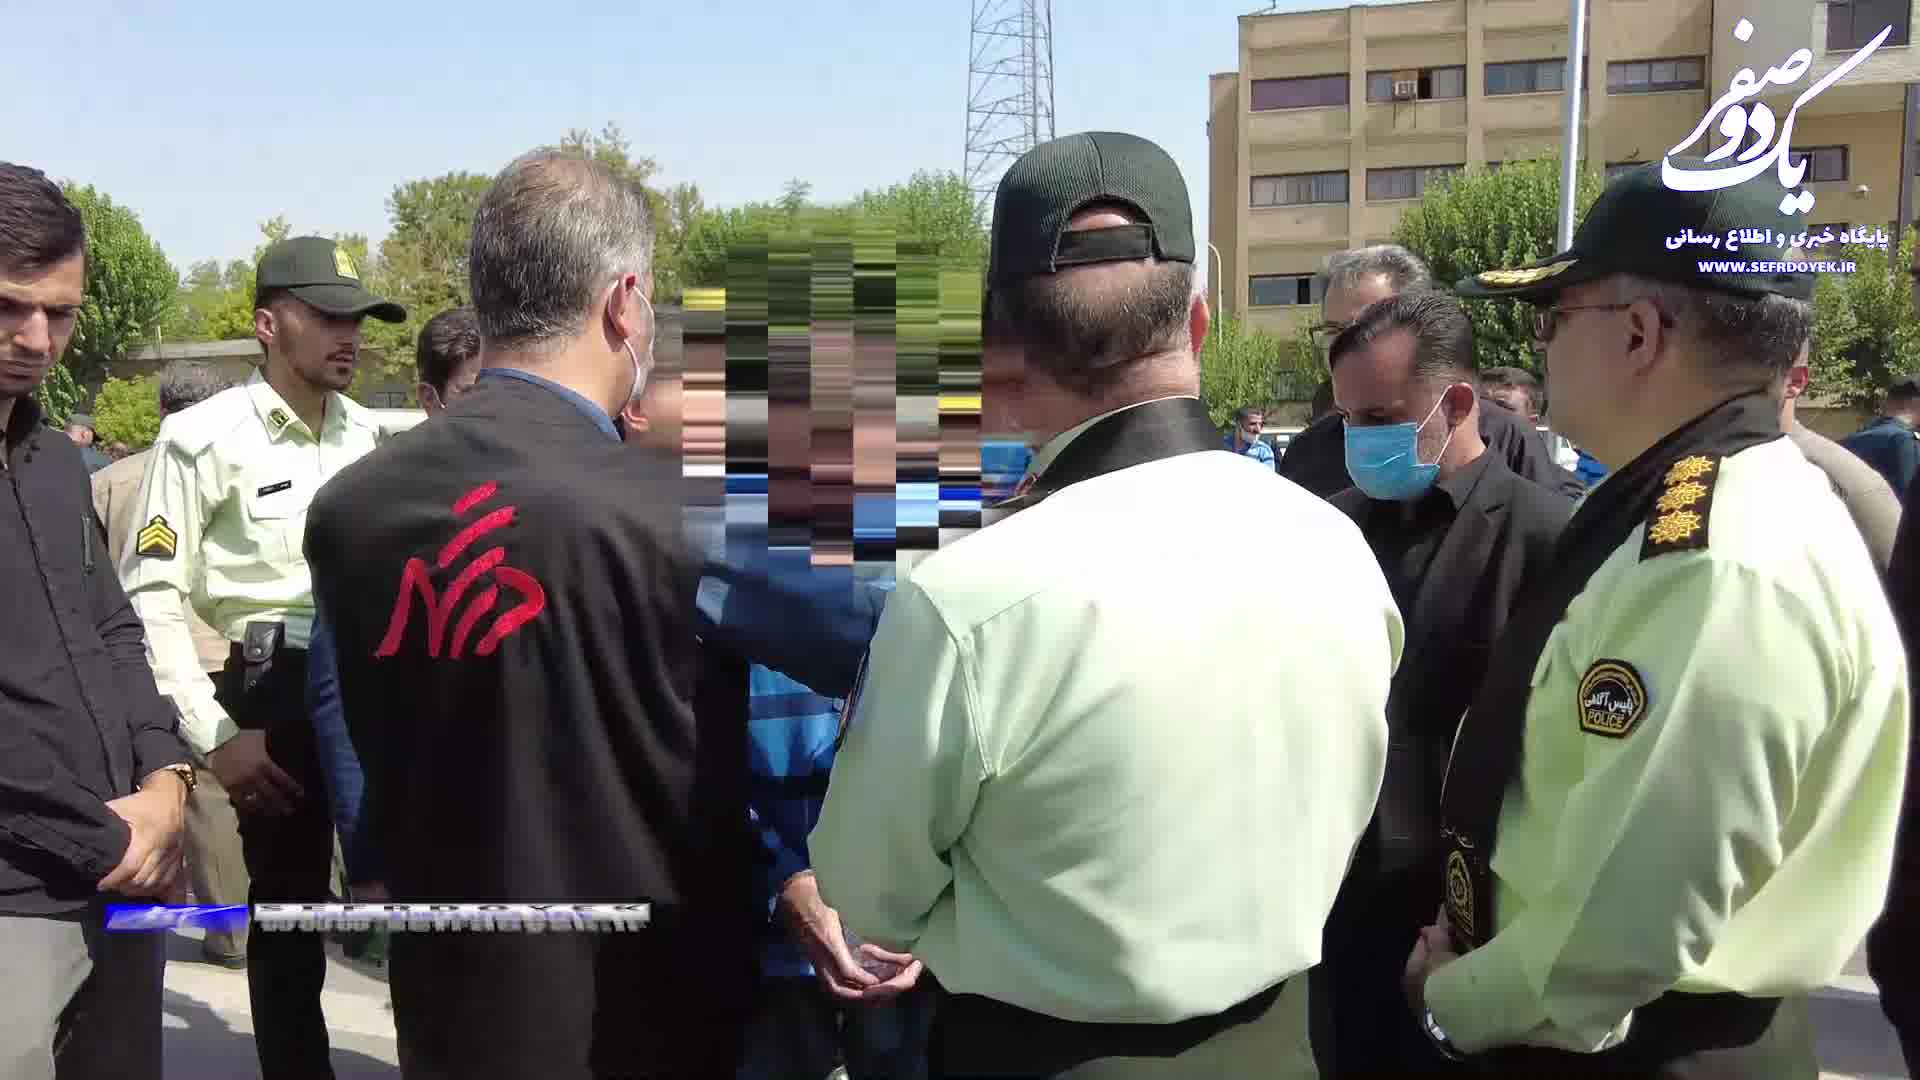 باند کلاهبرداری از بیماران بیمارستان از زندان پلیس آگاهی پایتخت